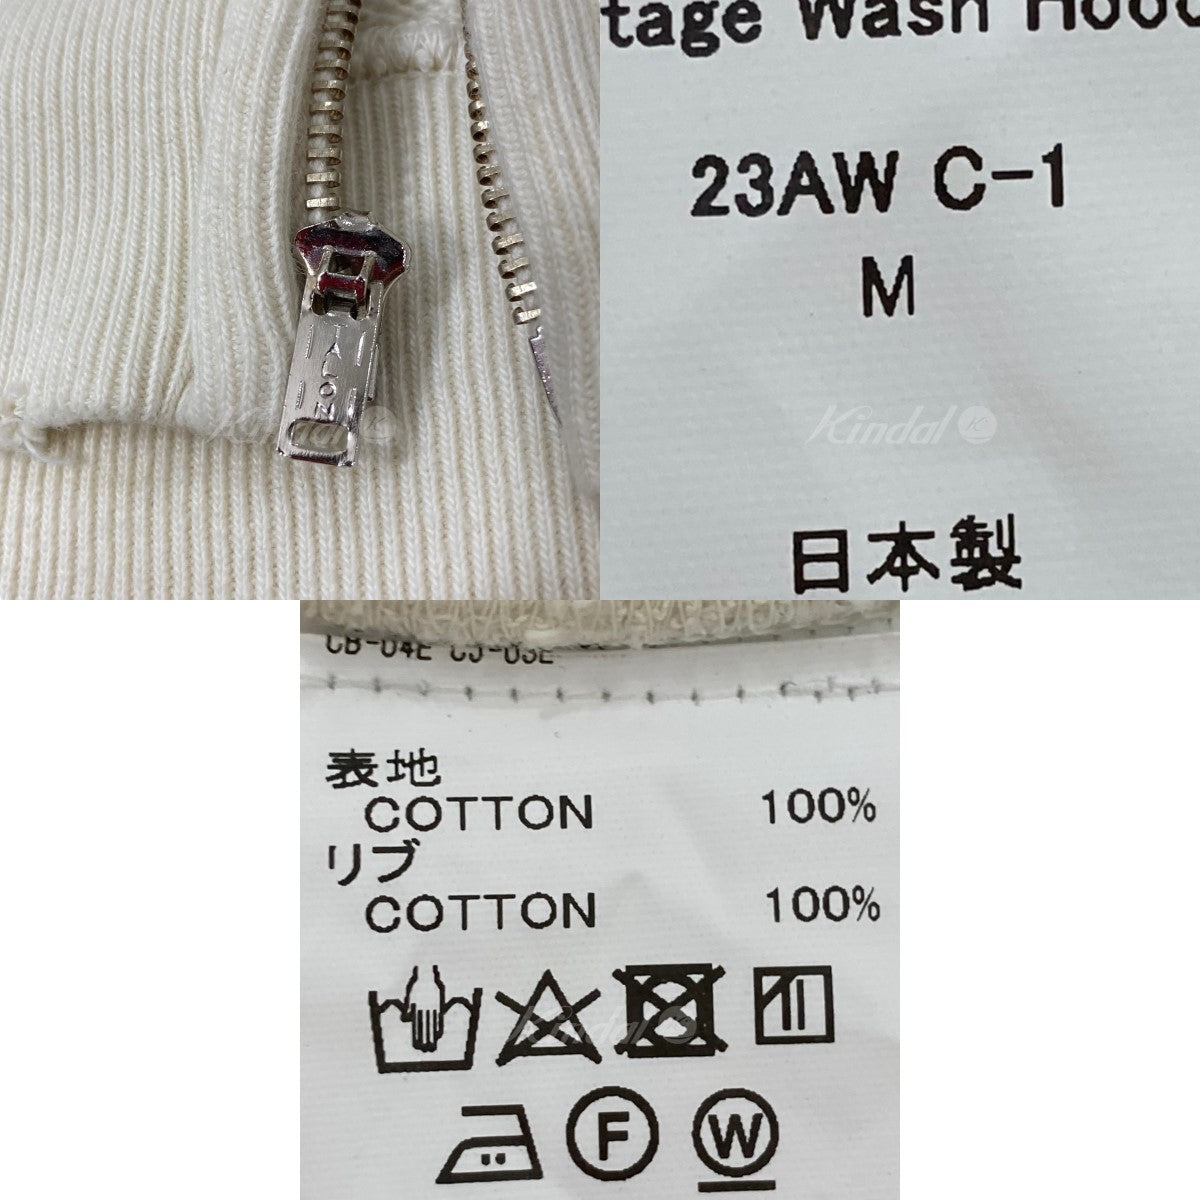 DAIRIKU(ダイリク) 23AW Water-repellent Vintage Wash Hoodie ジップ ...